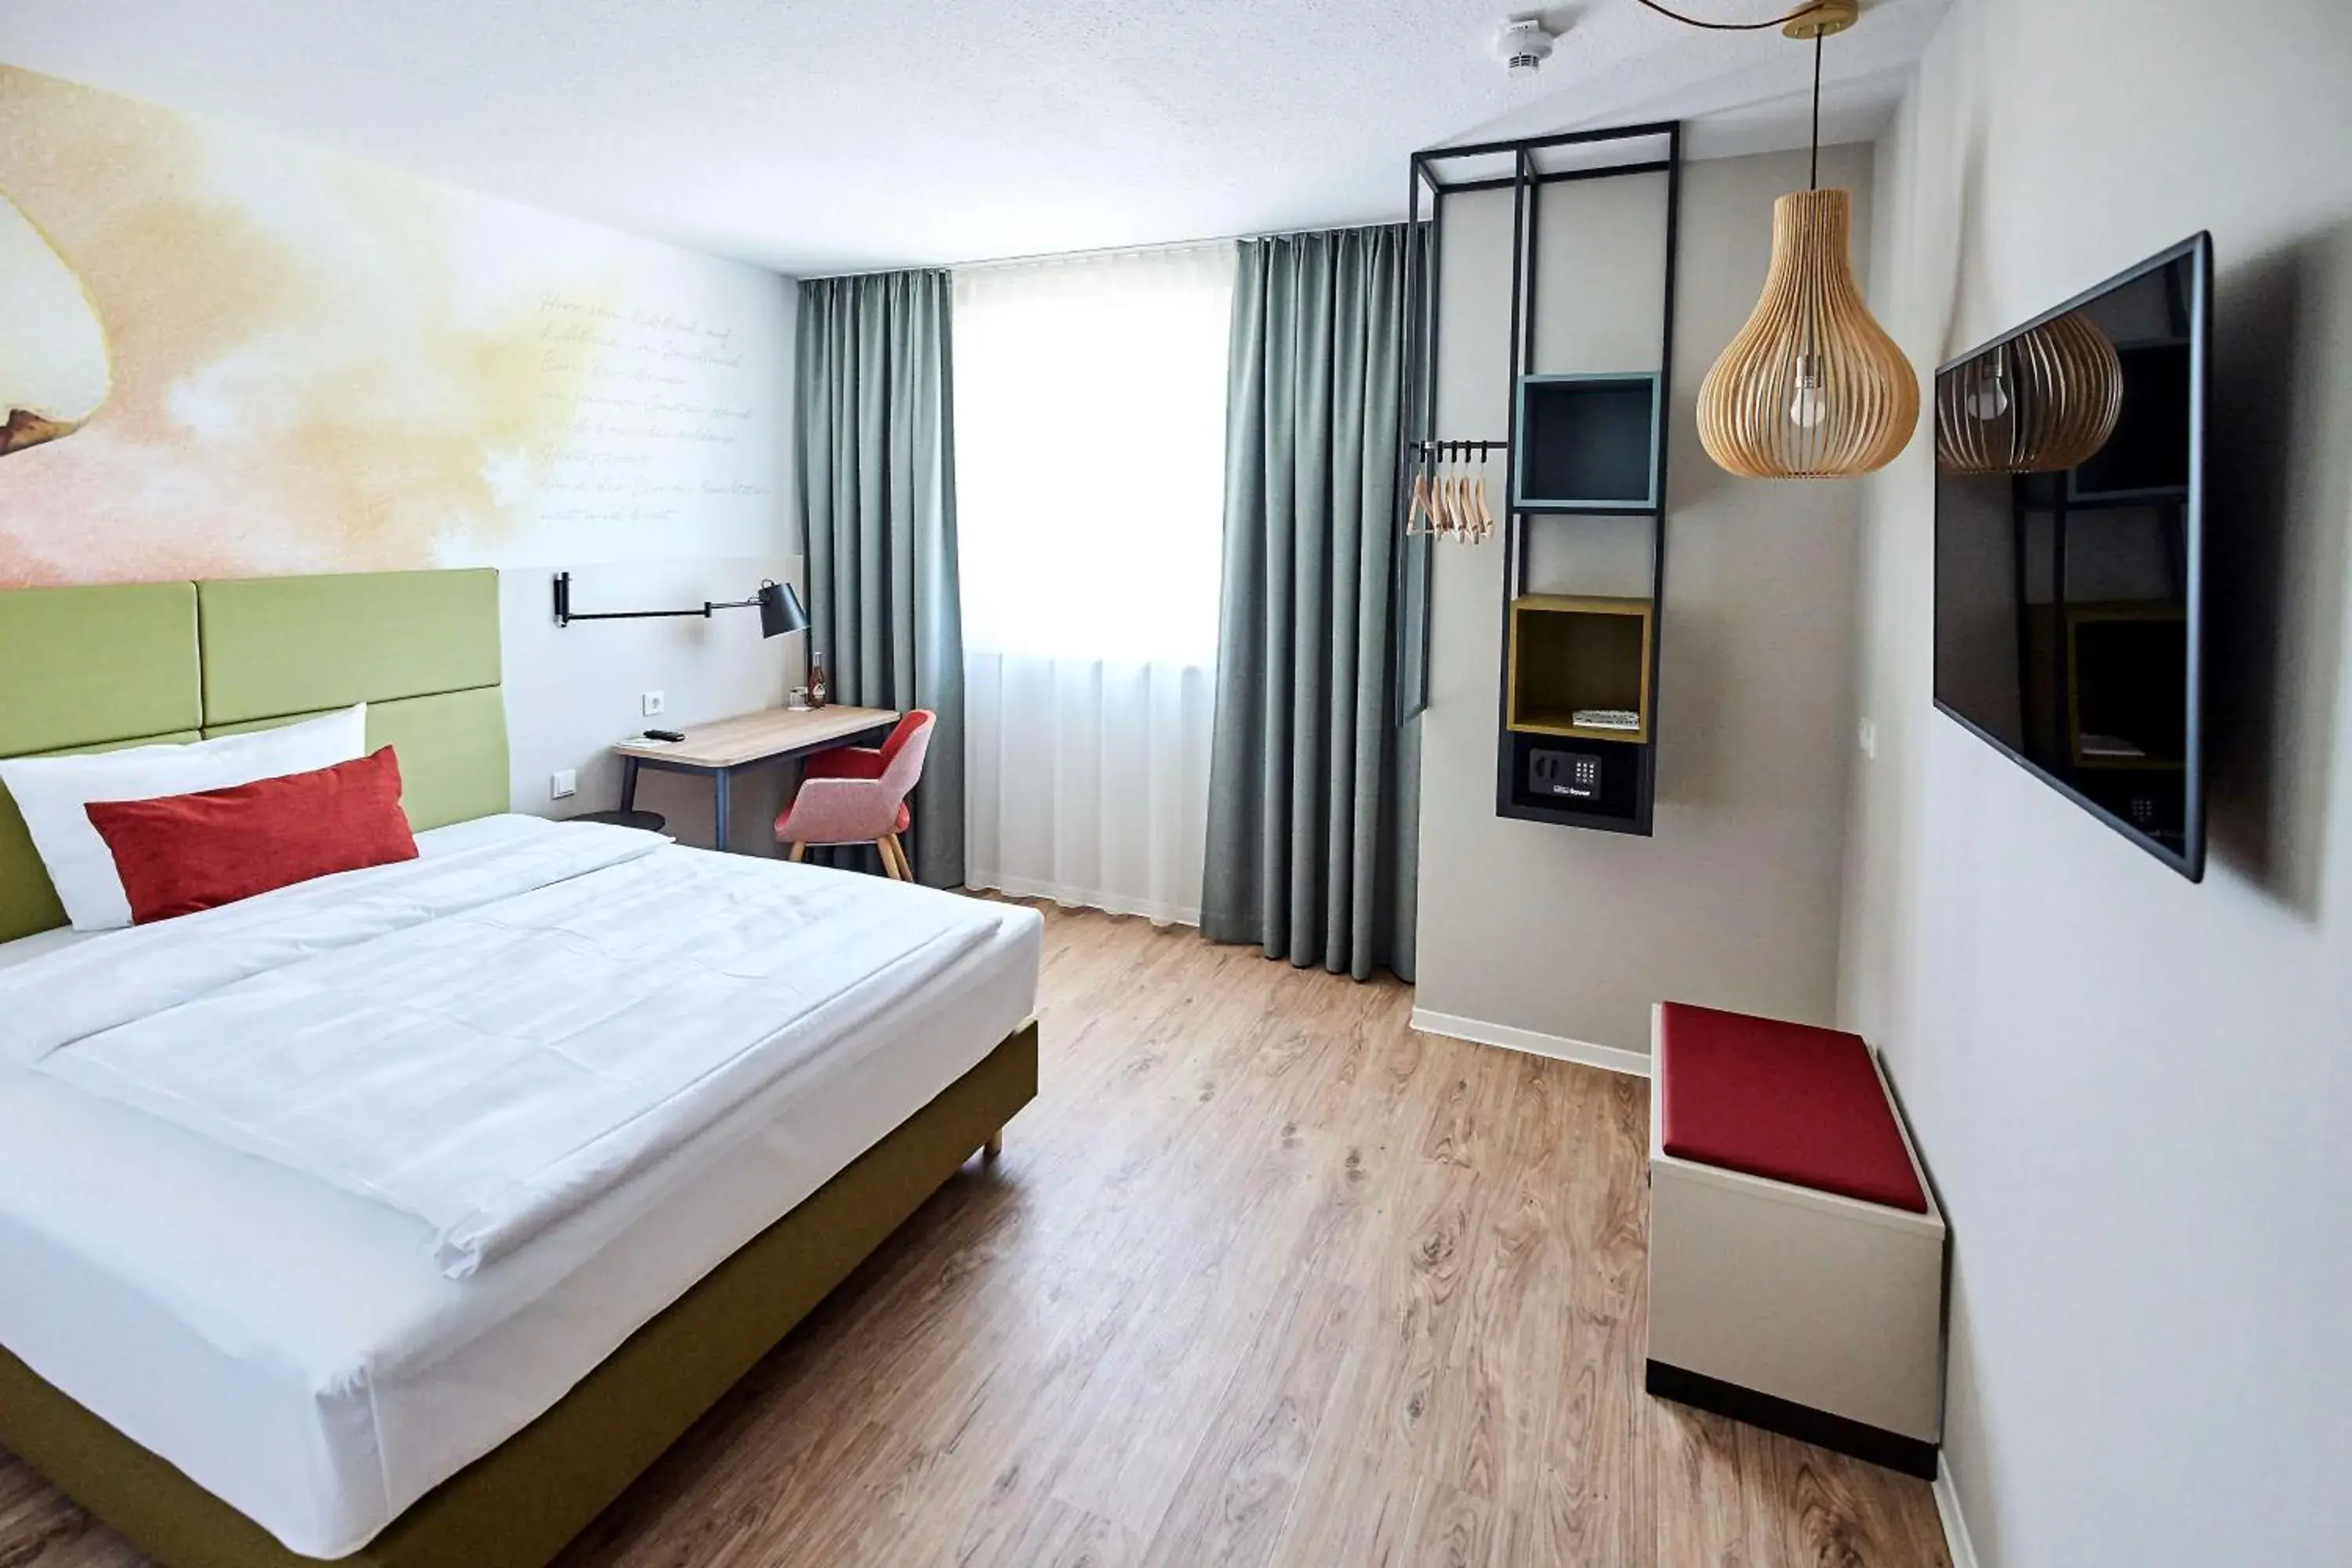 Photo of the whole room in Best Western Hotel Viernheim Mannheim